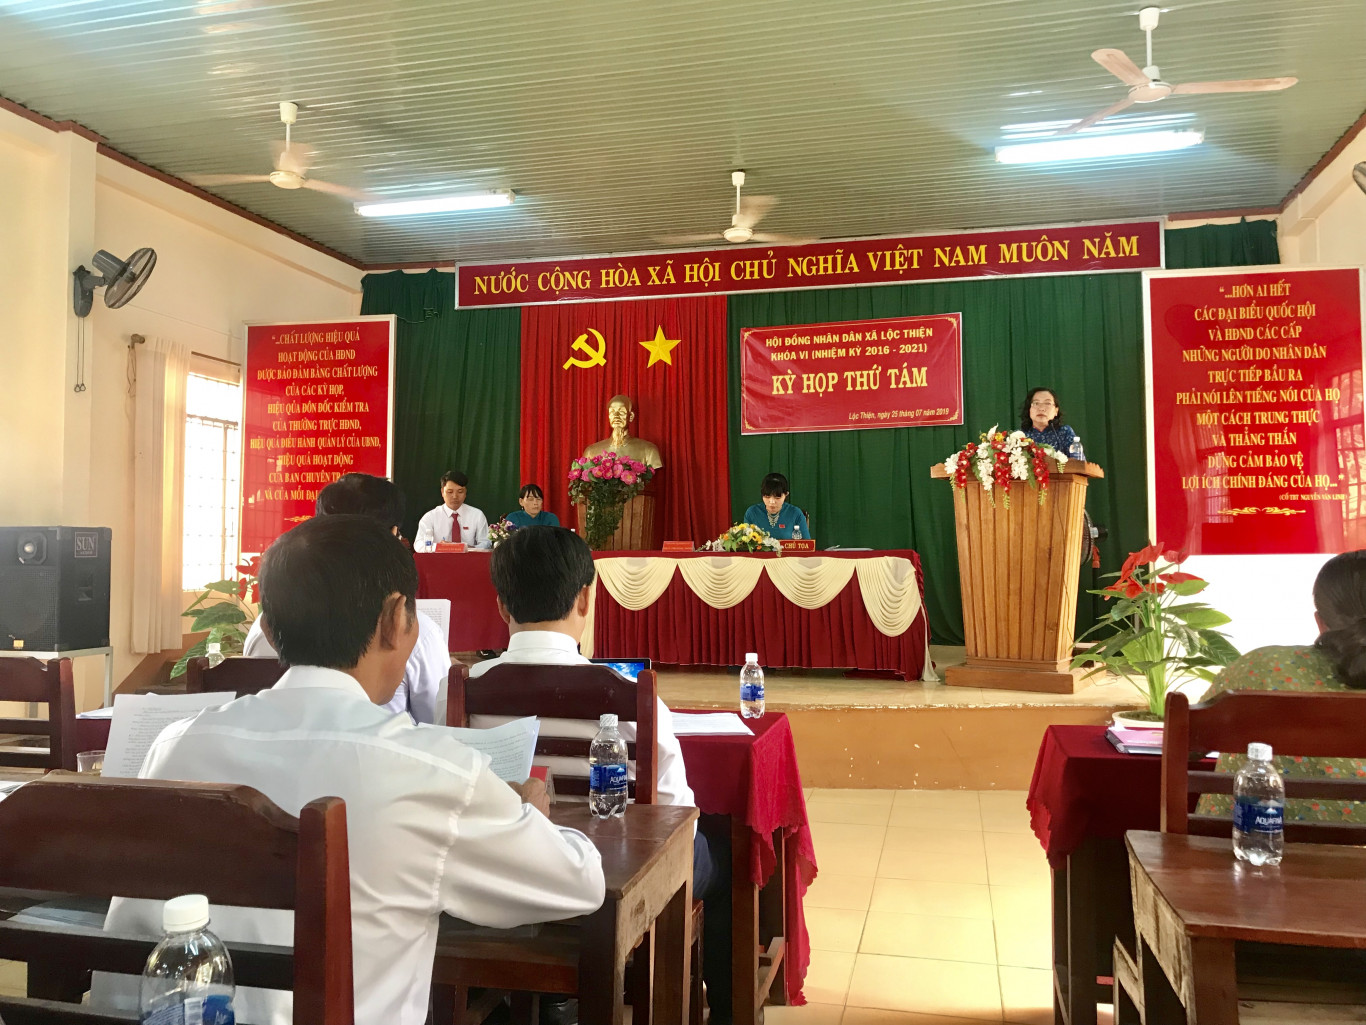 Kỳ họp thứ tám Hội đồng nhân dân xã Lộc Thiện, huyện Lộc Ninh khóa VI nhiệm kỳ 2016-2021